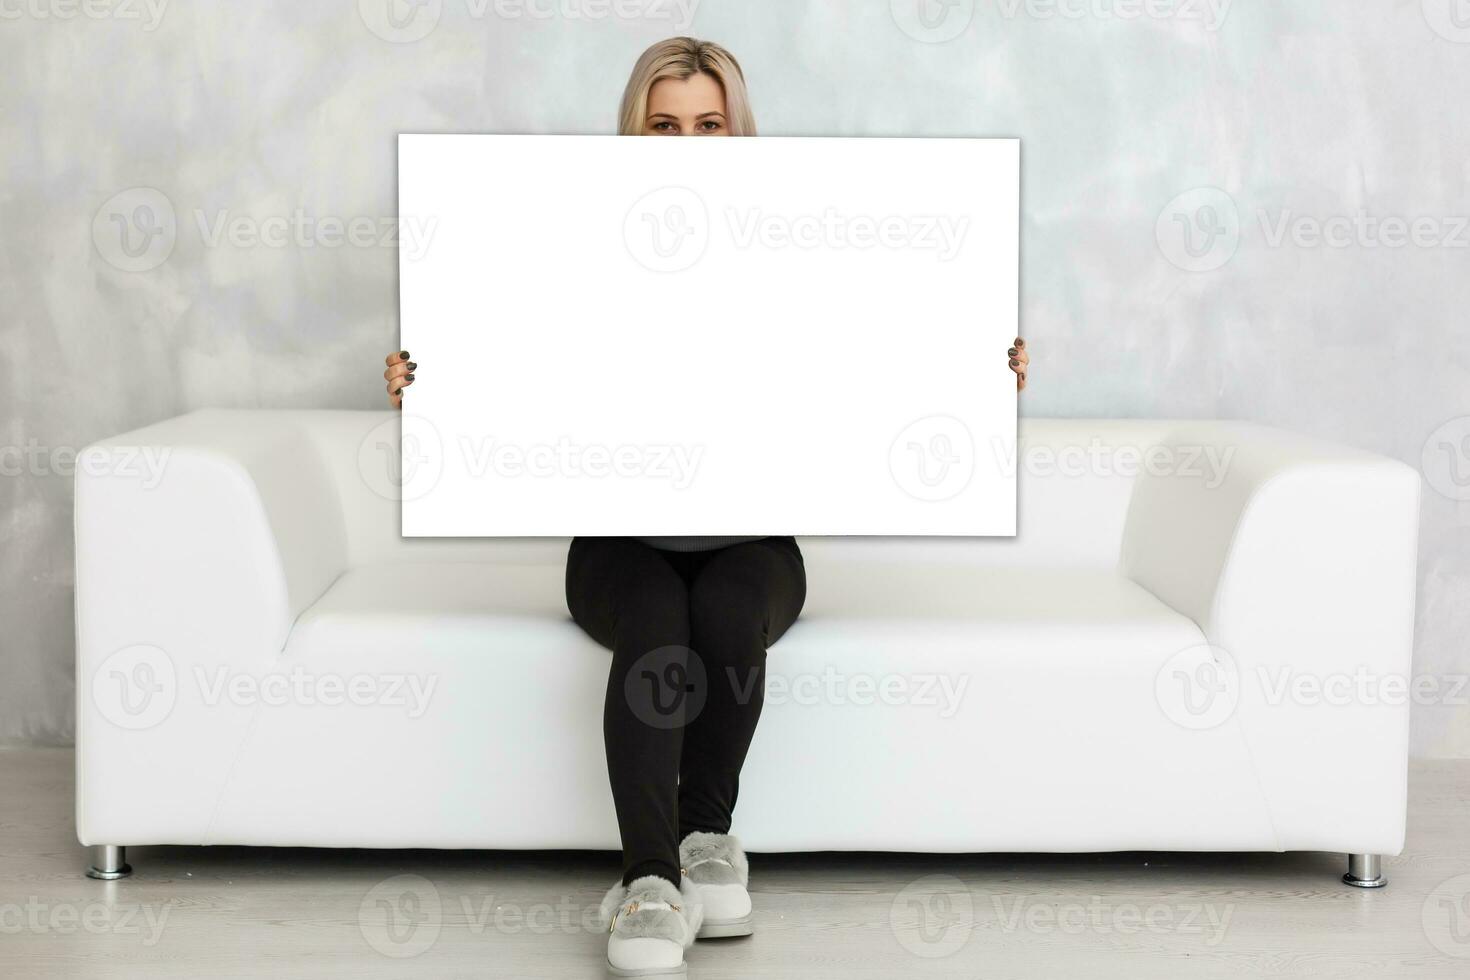 vrouw Holding een blanco bord voor uw tekst foto